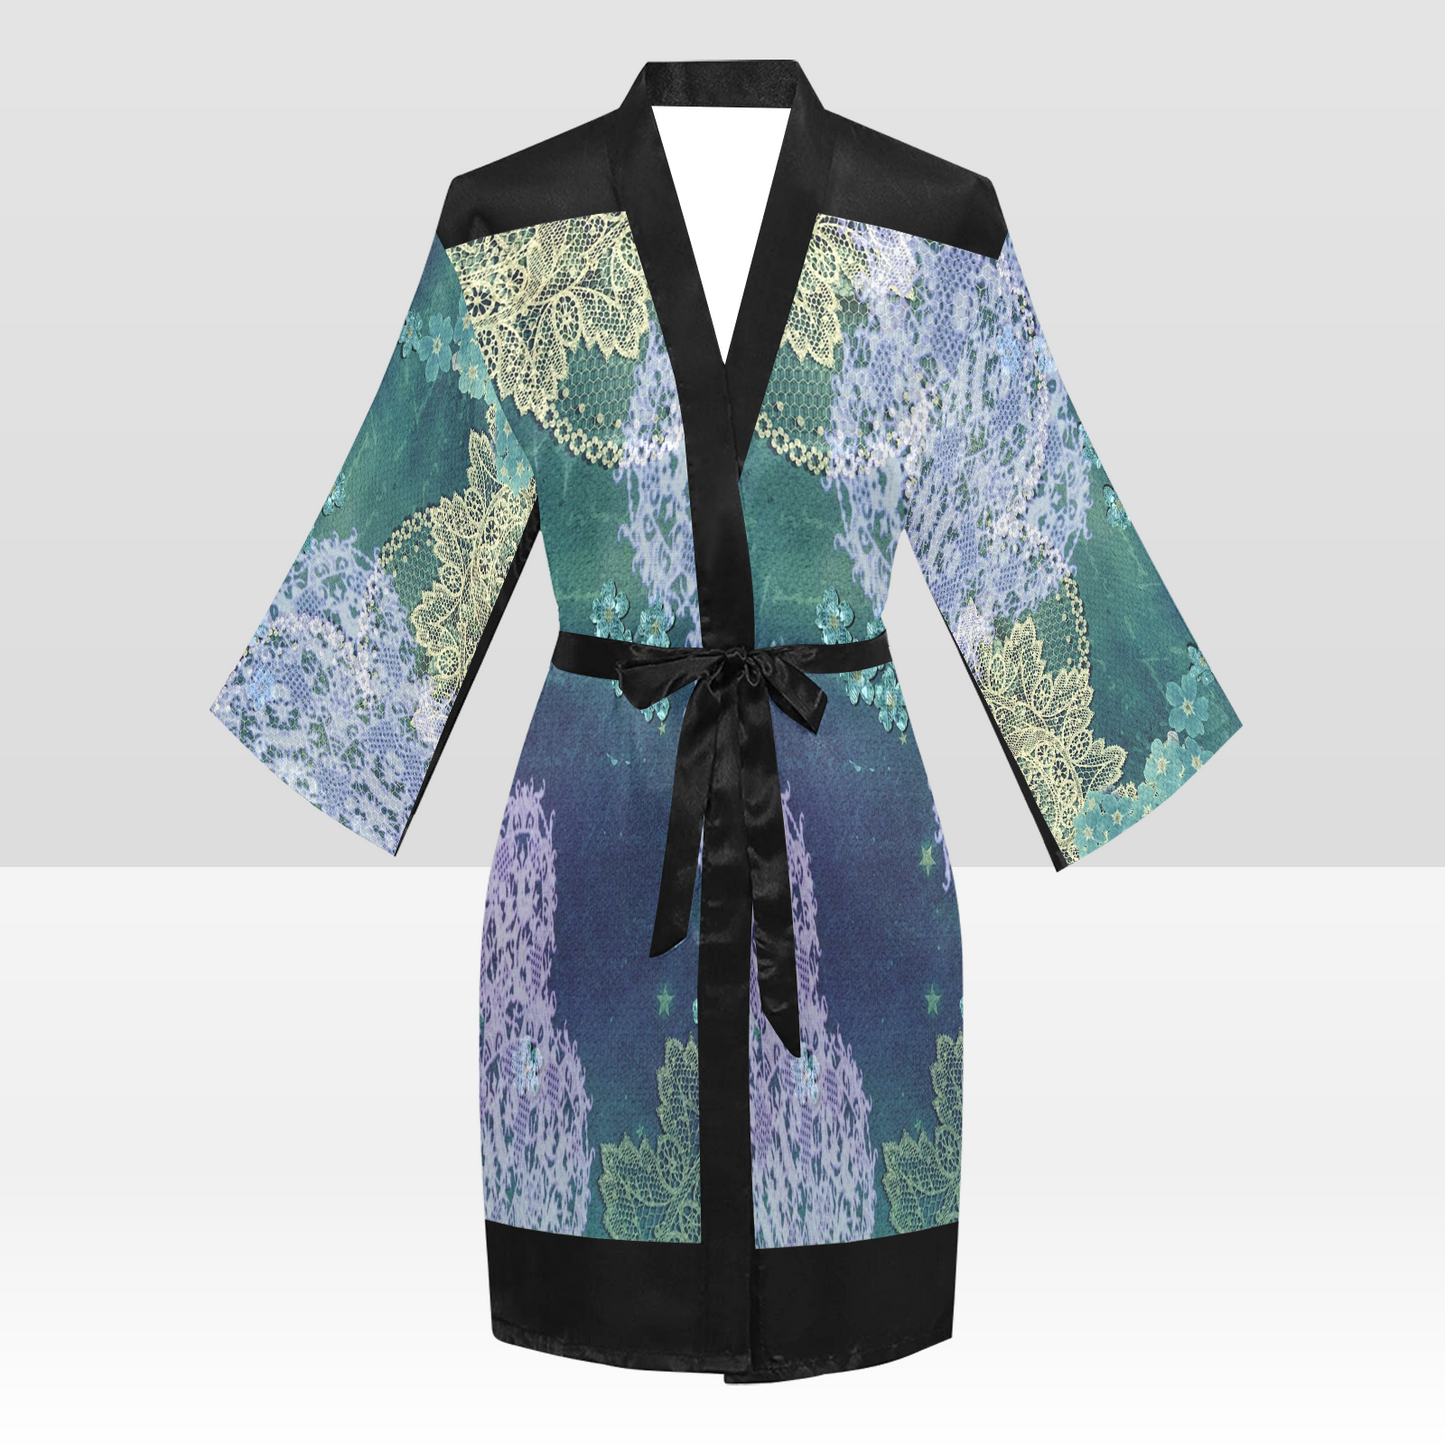 Victorian Lace Kimono Robe, Black or White Trim, Sizes XS to 2XL, Design 05